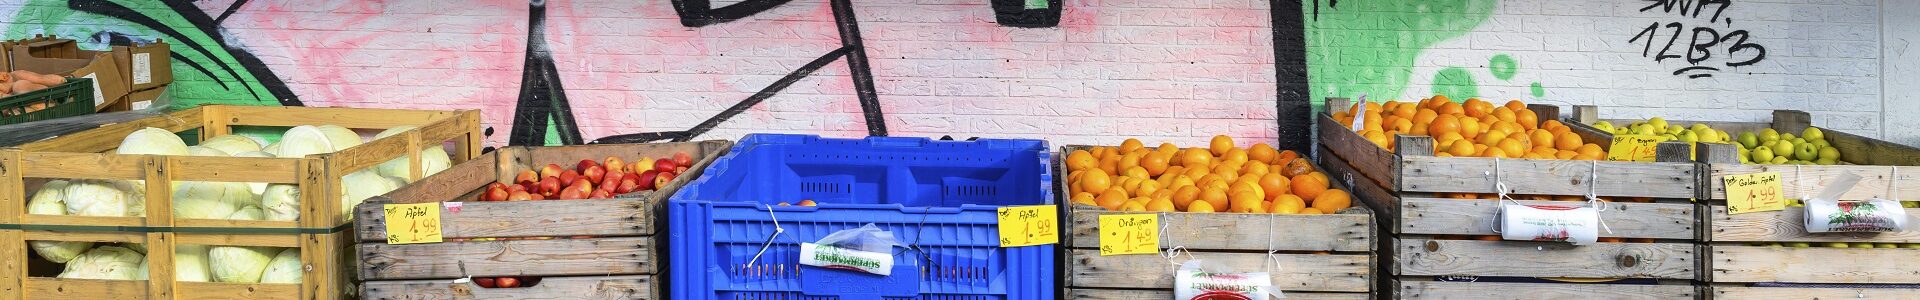 Unterschiedliches Obst in großen Boxen vor einer Wand, die mit Graffiti besprüht ist.